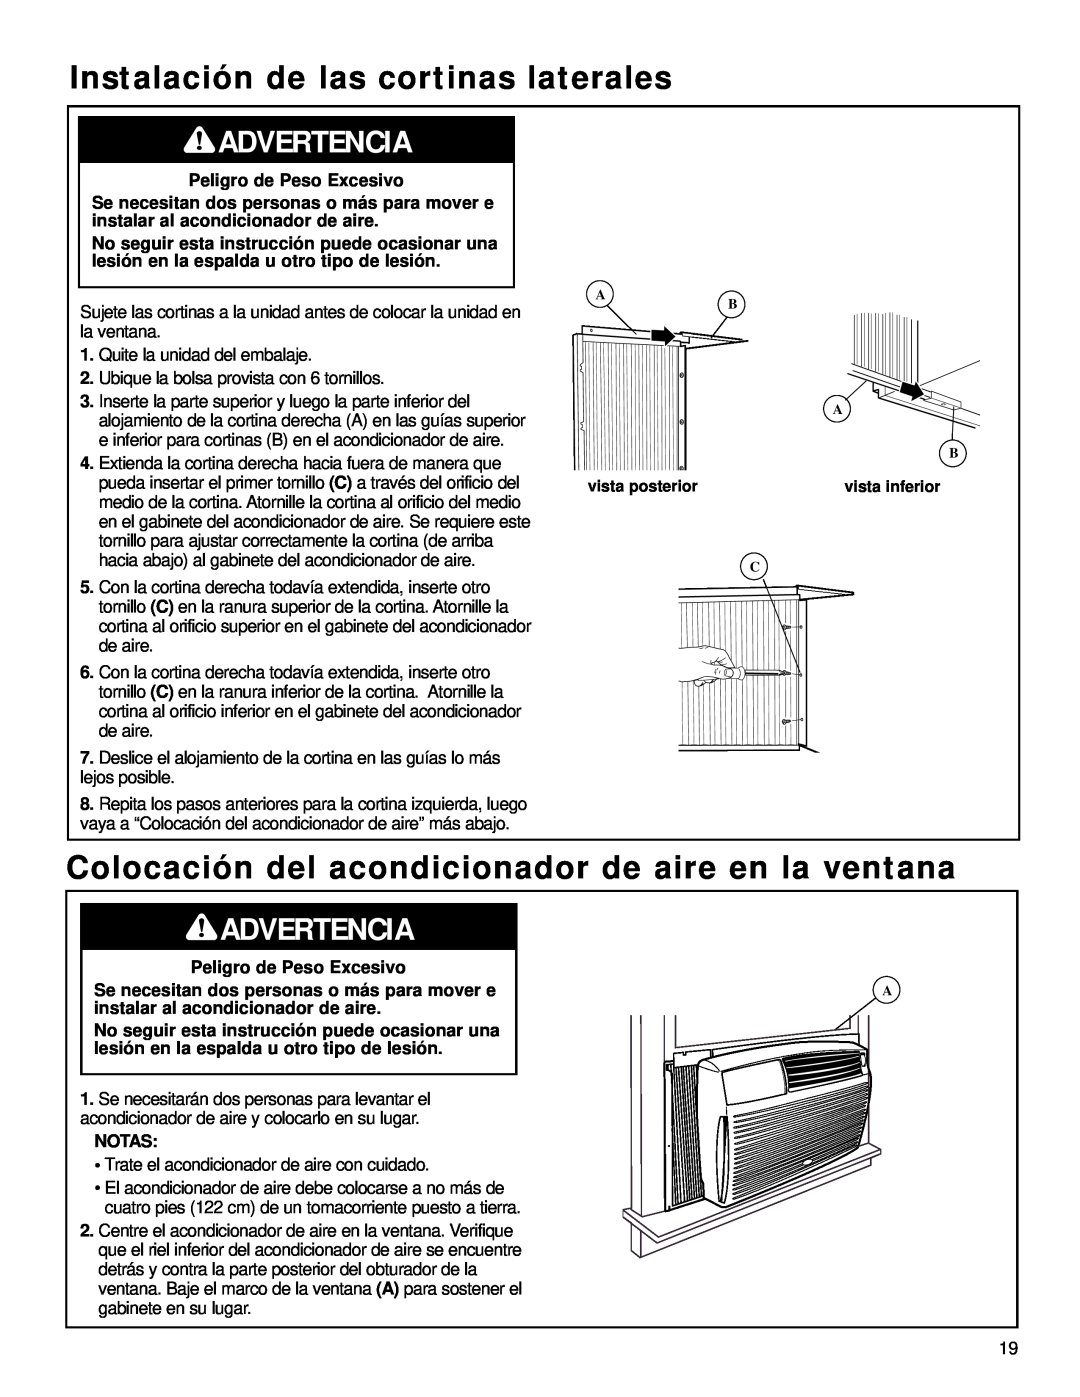 Whirlpool ACQ058MM0 manual Instalación de las cortinas laterales, Advertencia, Peligro de Peso Excesivo, Notas 